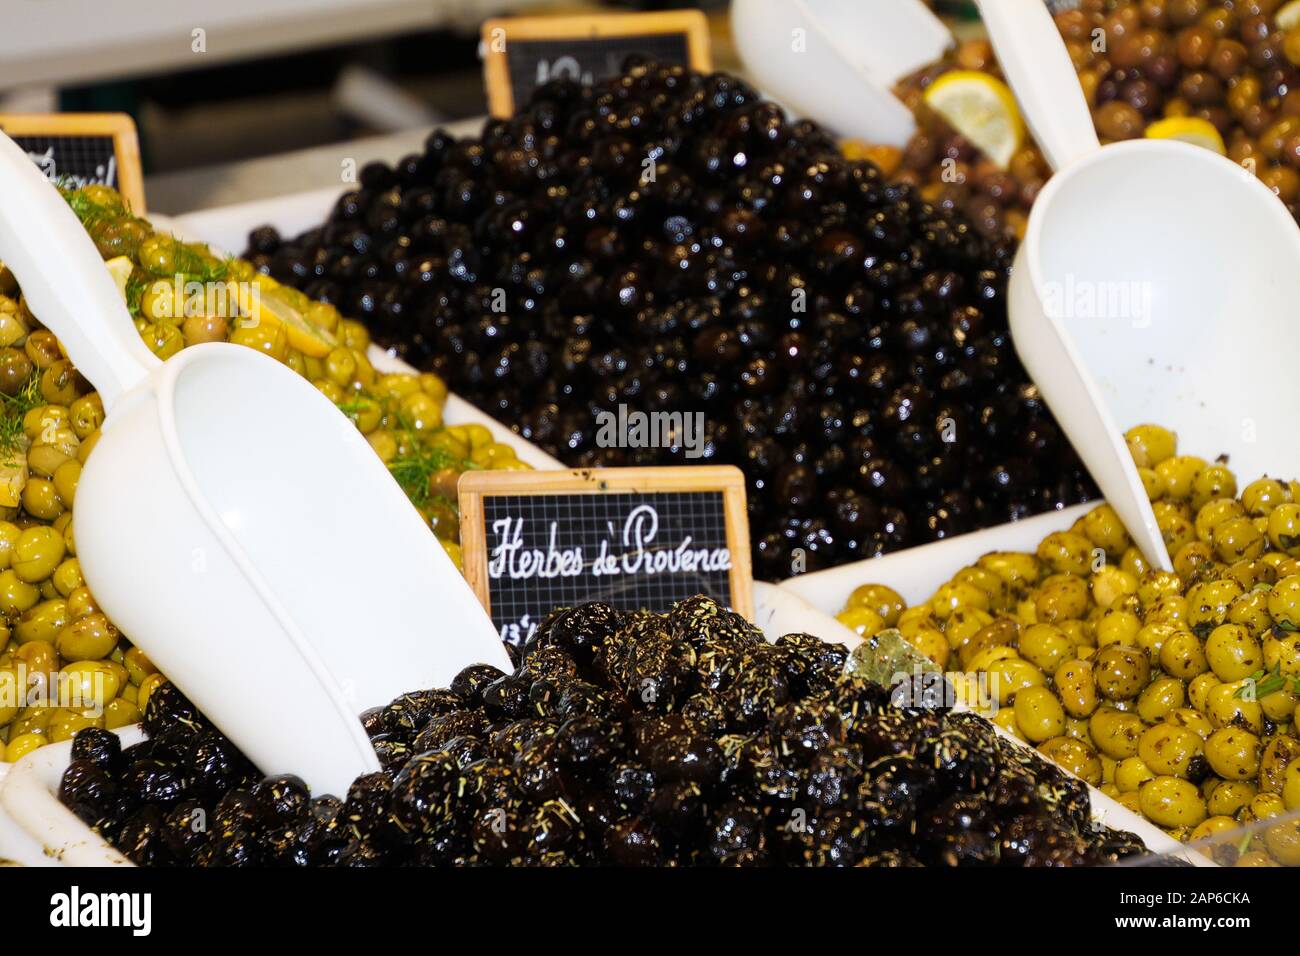 Nahaufnahme von isolierten grünen und schwarzen frischen französischen Oliven, gewürzt mit Kräutern aus der Provence auf dem Bauernmarkt - St. Tropez, Frankreich Stockfoto